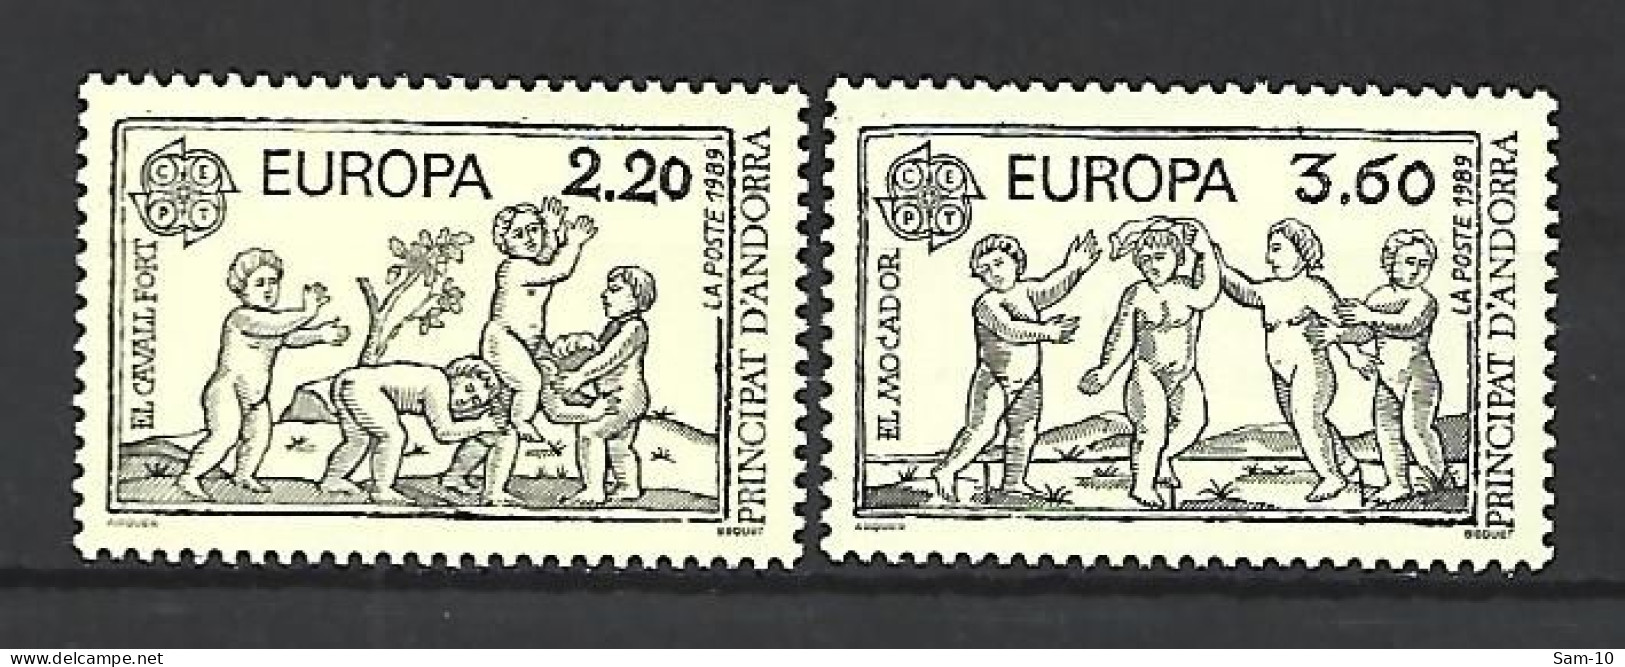 Timbre De Europa Neuf ** Andorre Français N 378 / 379 - 1989